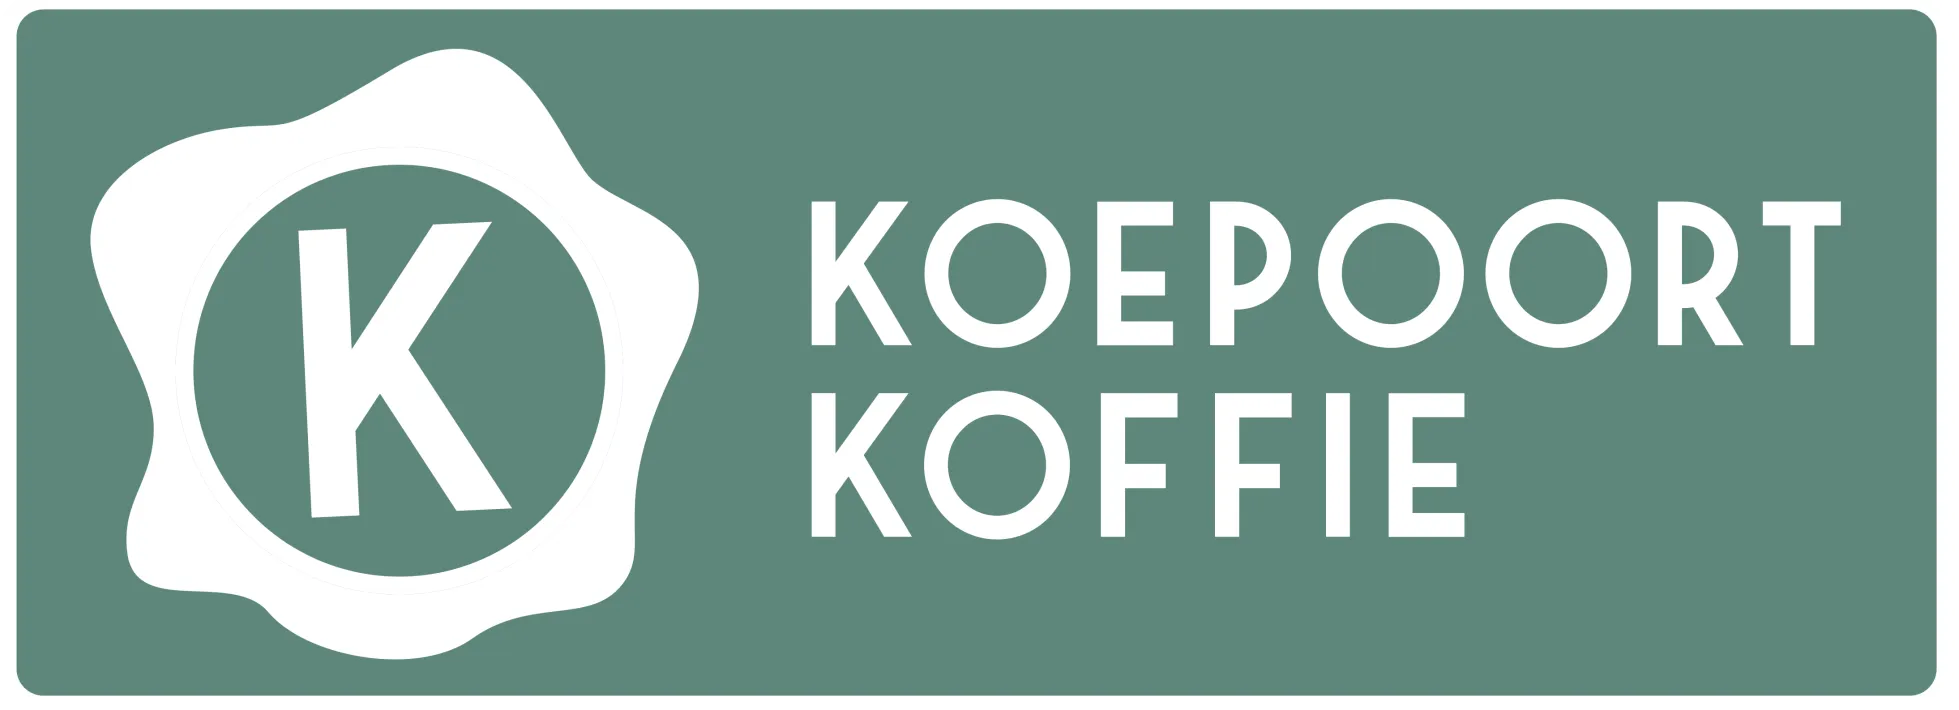 koepoort-logo